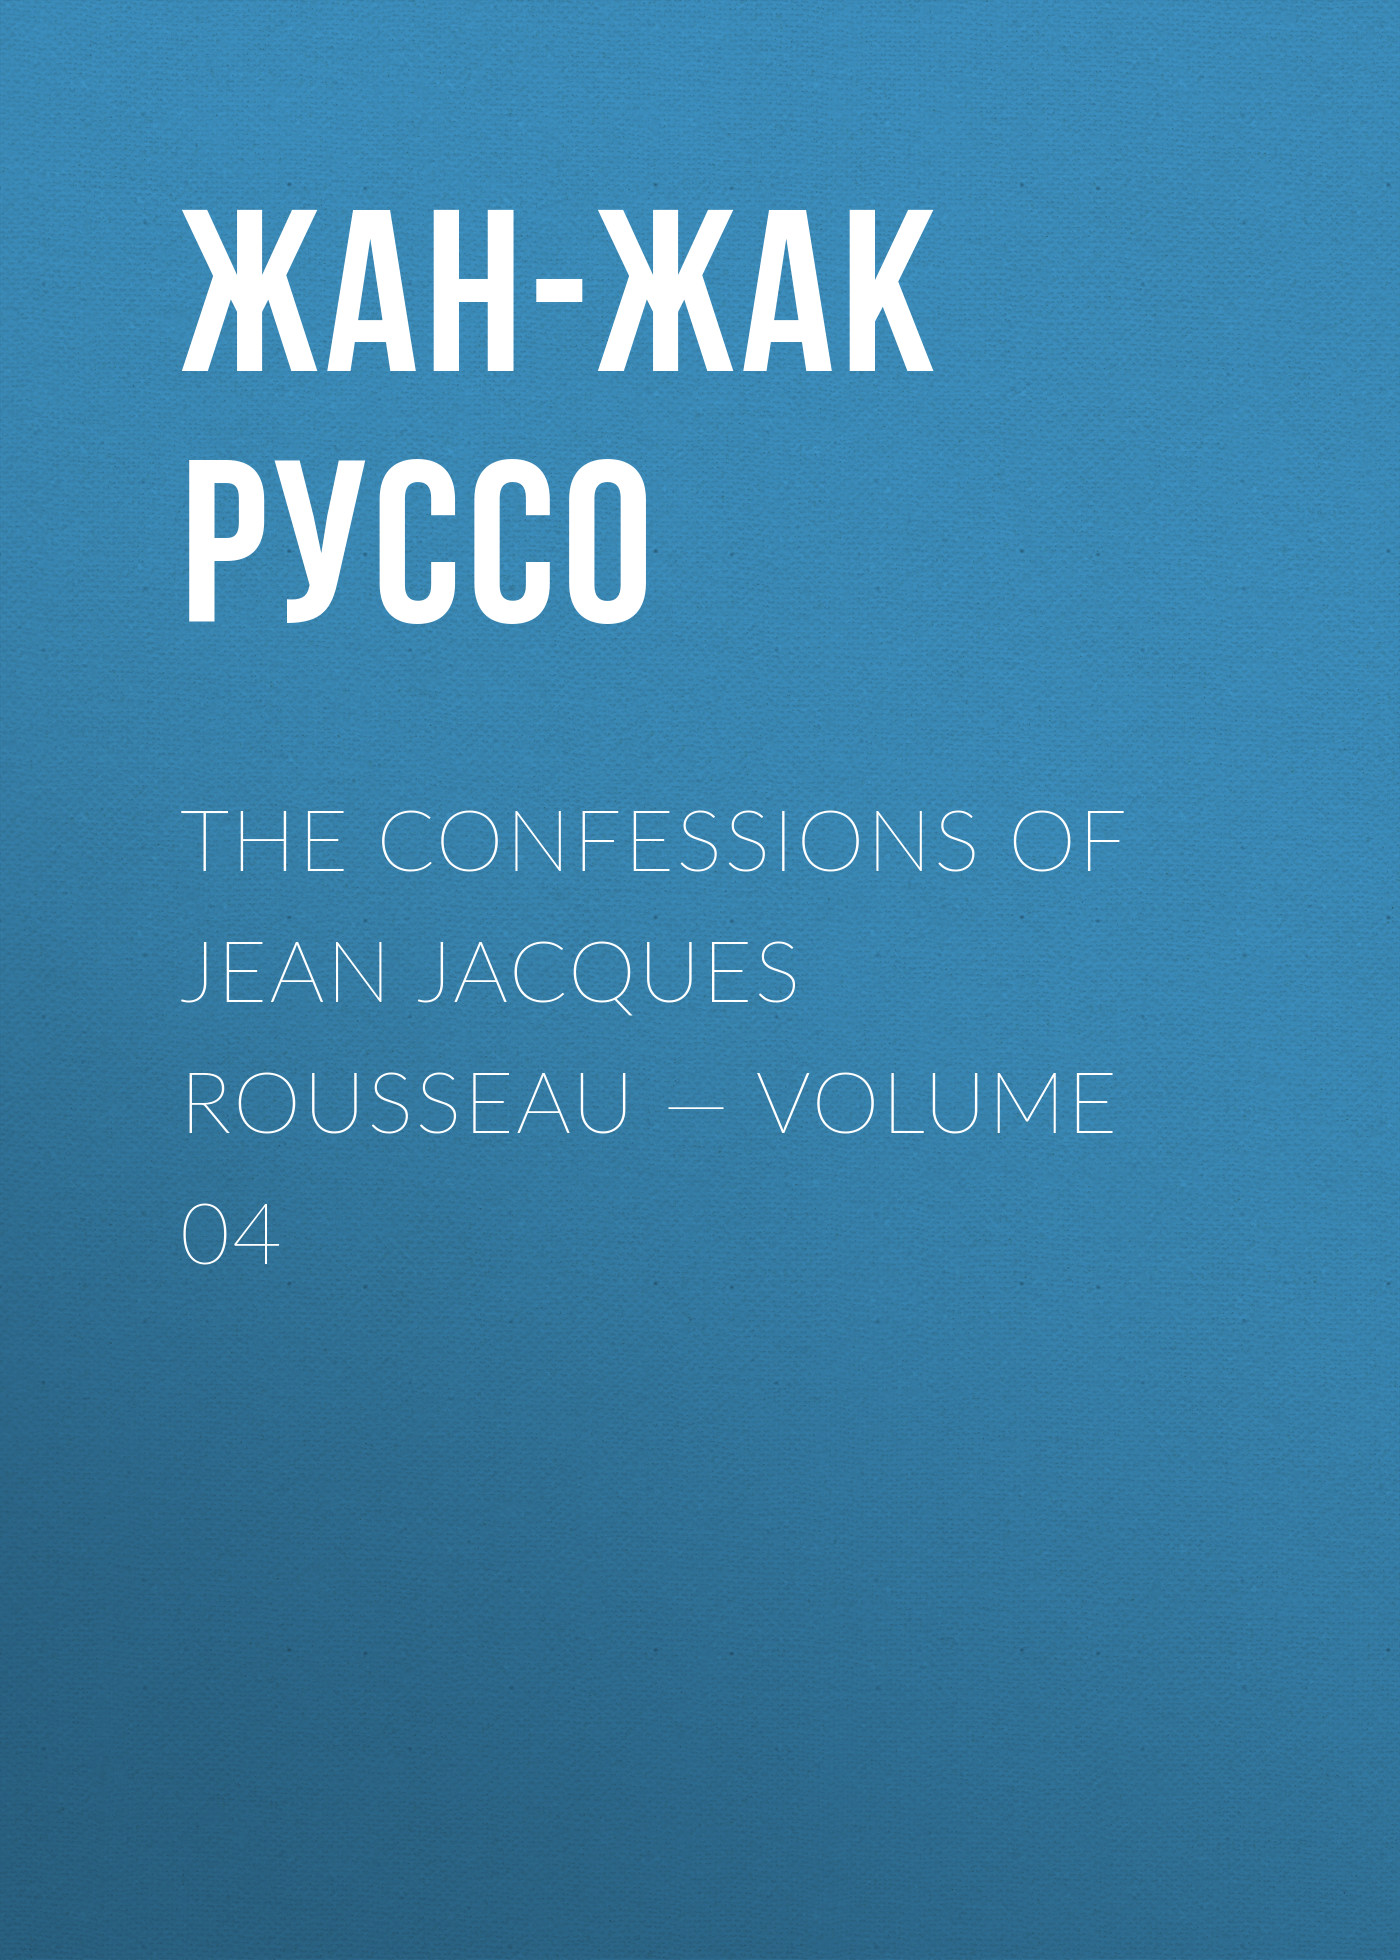 Книга The Confessions of Jean Jacques Rousseau – Volume 04 из серии , созданная Жан-Жак Руссо, может относится к жанру Биографии и Мемуары, Литература 18 века, Зарубежная старинная литература. Стоимость электронной книги The Confessions of Jean Jacques Rousseau – Volume 04 с идентификатором 34840262 составляет 0 руб.